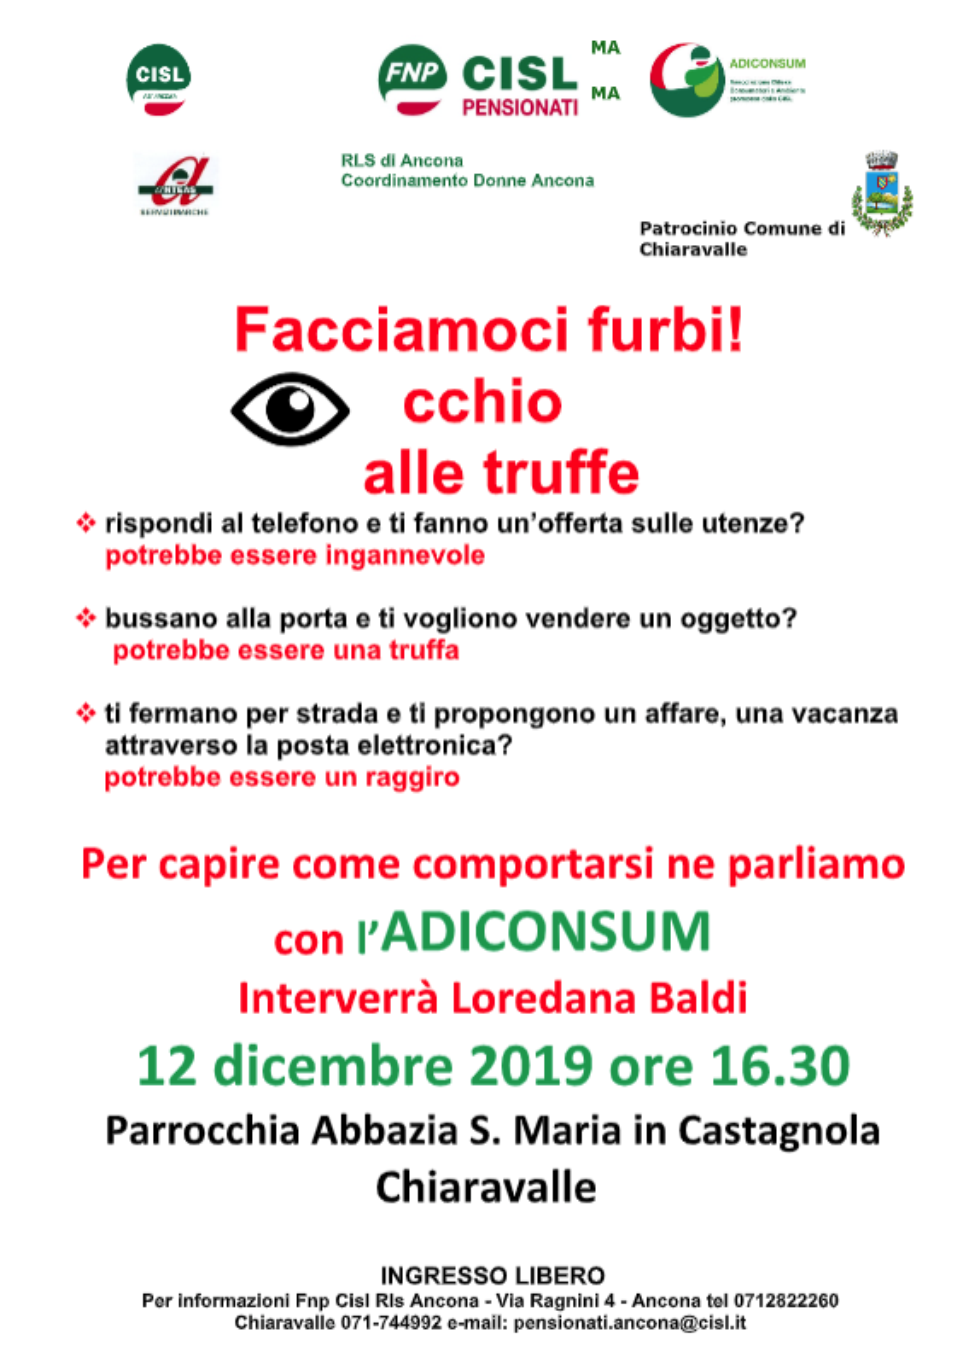 Occhio alle truffe: appuntamento con Adiconsum a Chiaravalle